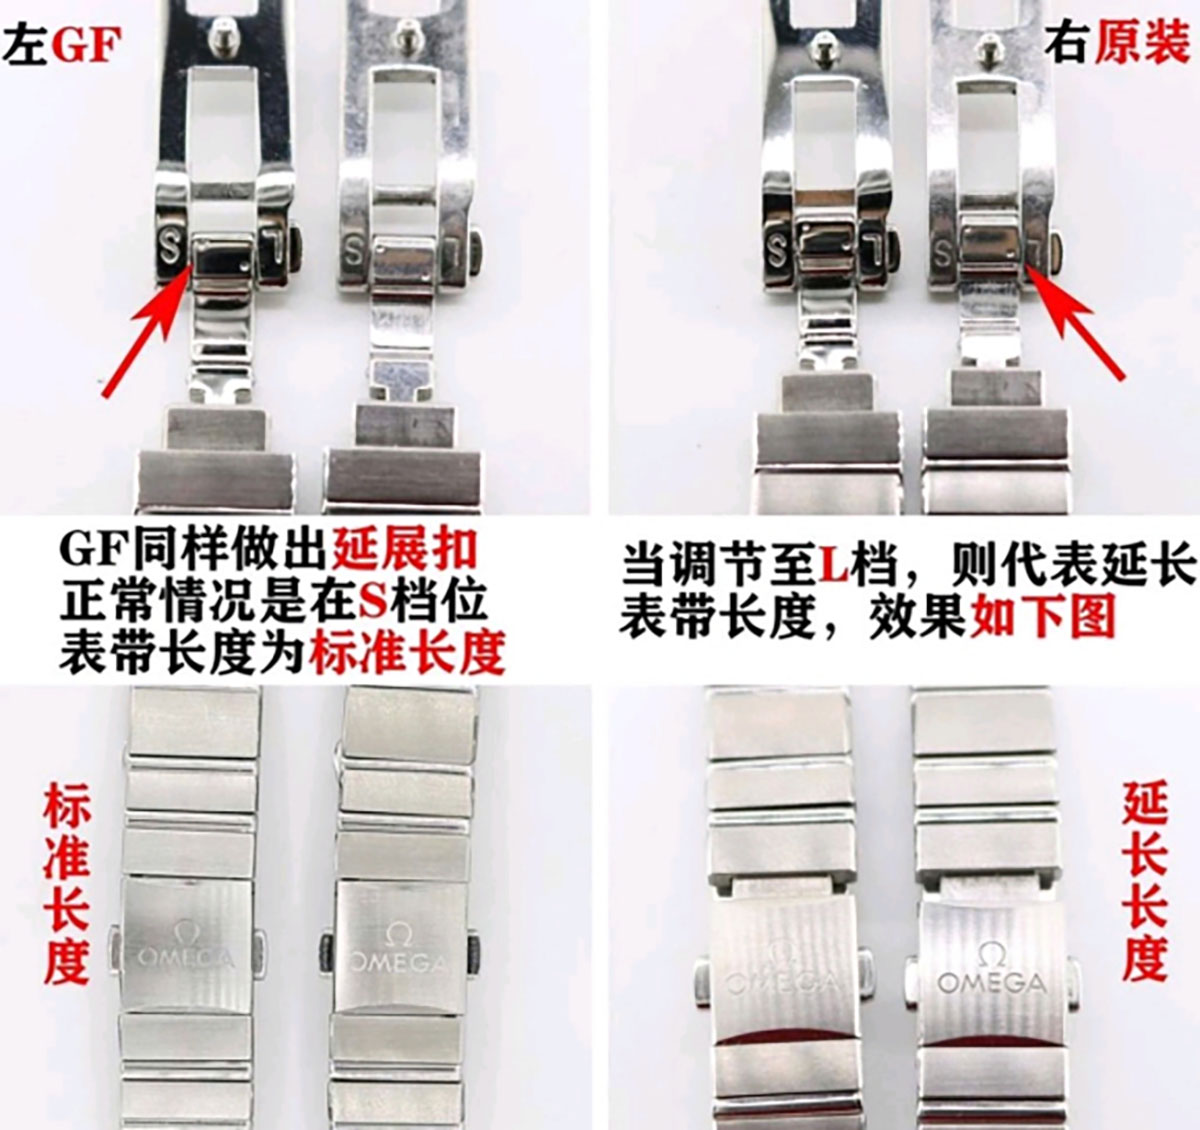 GF厂欧米茄星座系列25毫米贝壳面复刻腕表对比正品细节图文评测-腕表真假对比